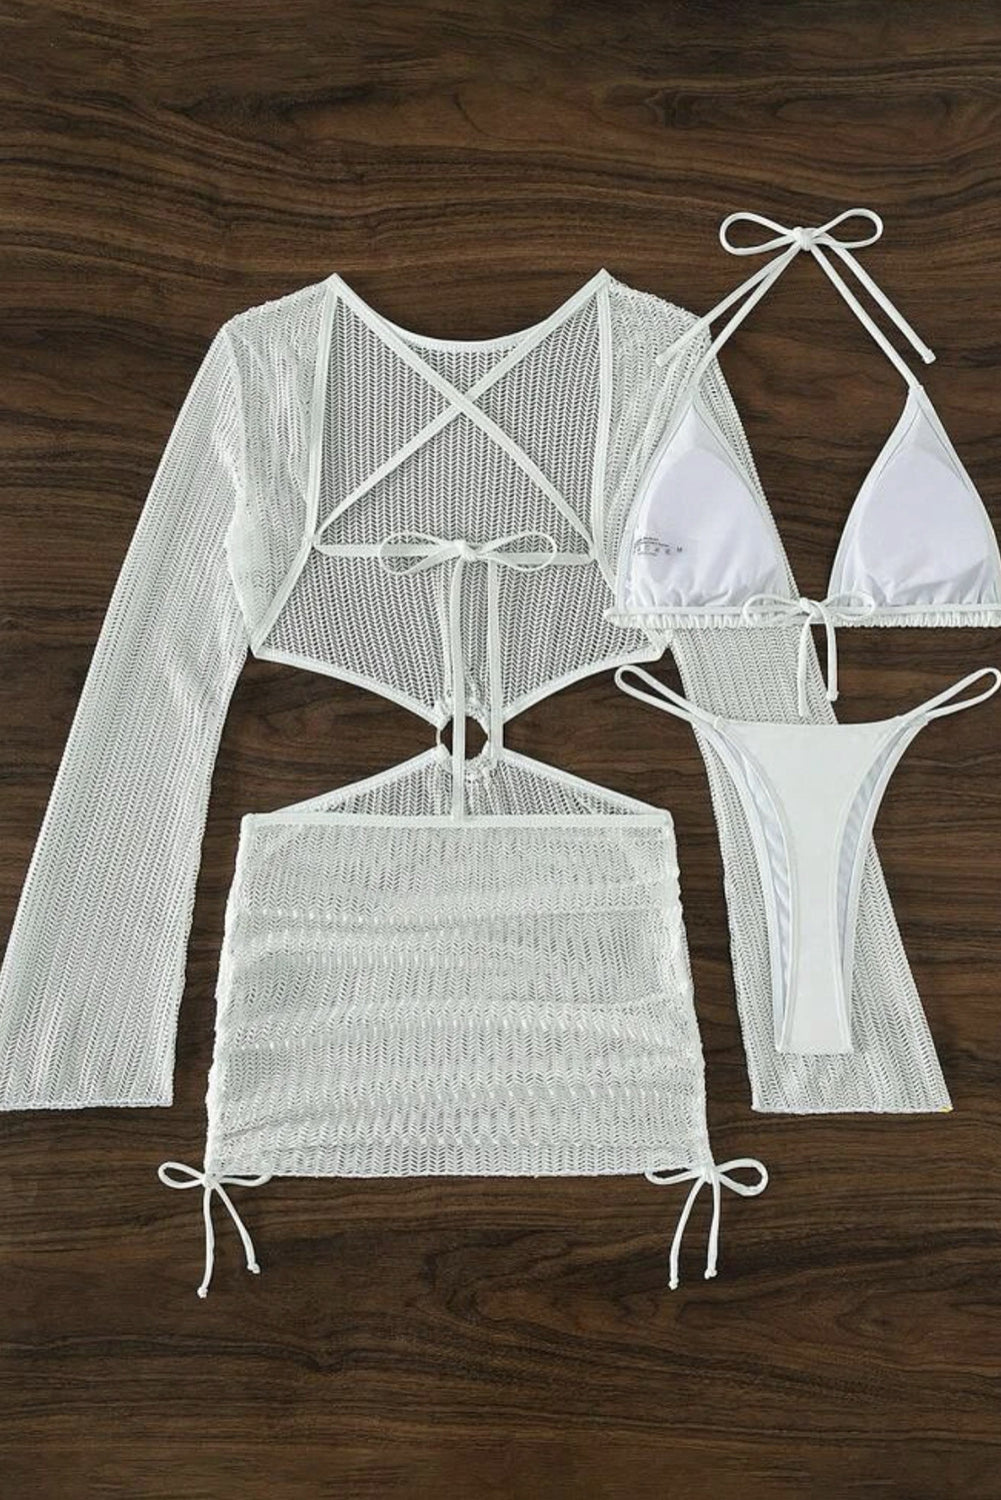 Micro bikini blanc 3 pièces avec joint torique, dos nu, robe en crochet